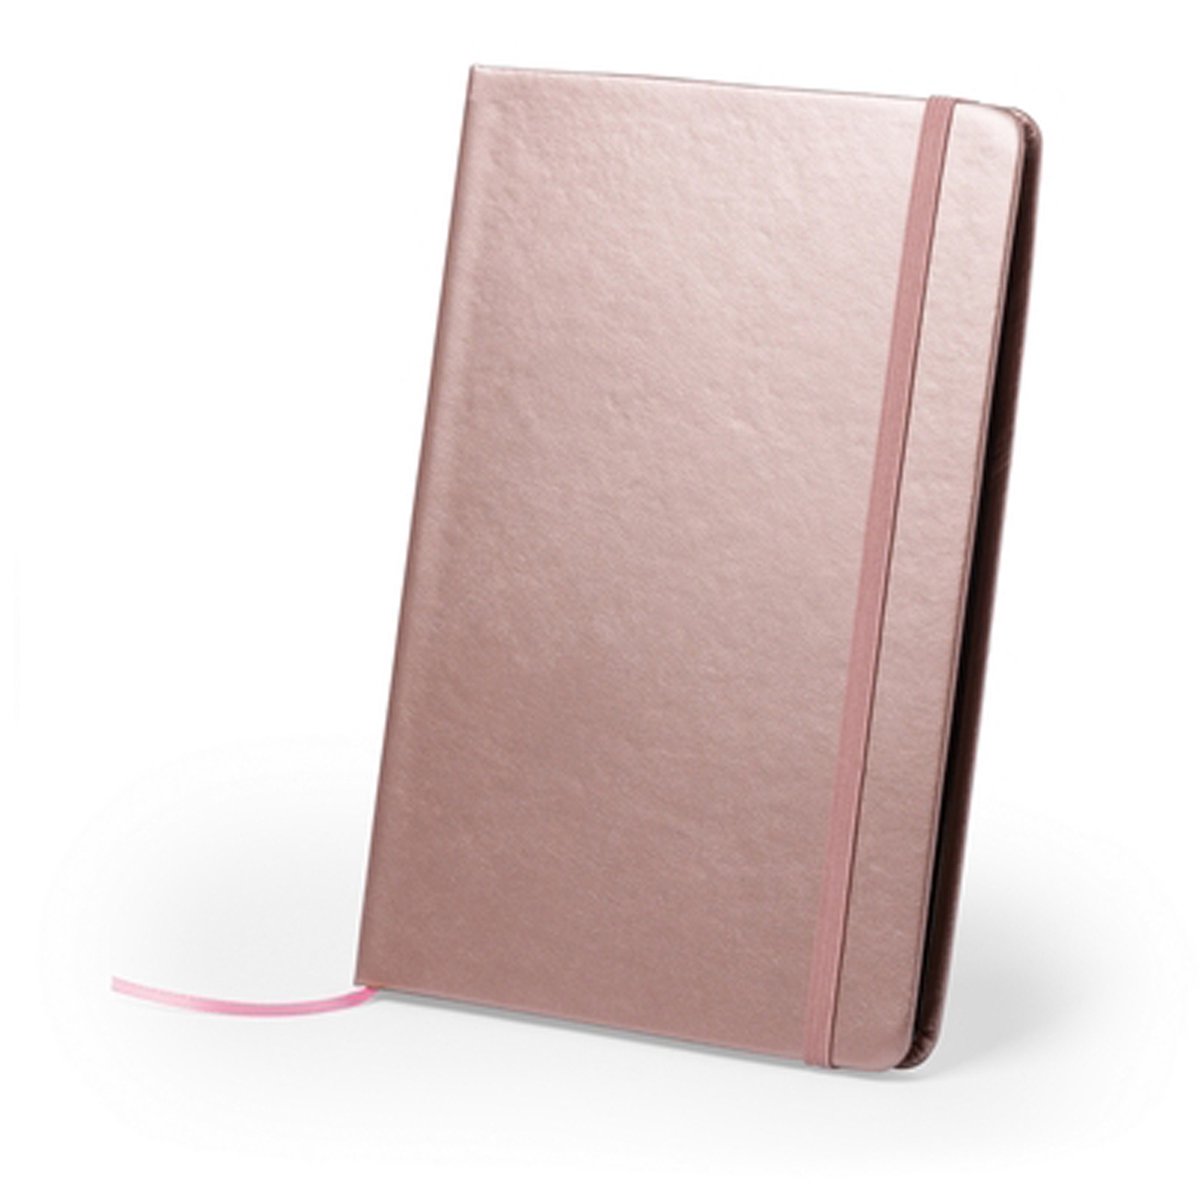 The Root - Notebook / Notitieboek A5 - In de trendy kleur Rosé goud / Rose gold - Ook te gebruiken als gastenboek